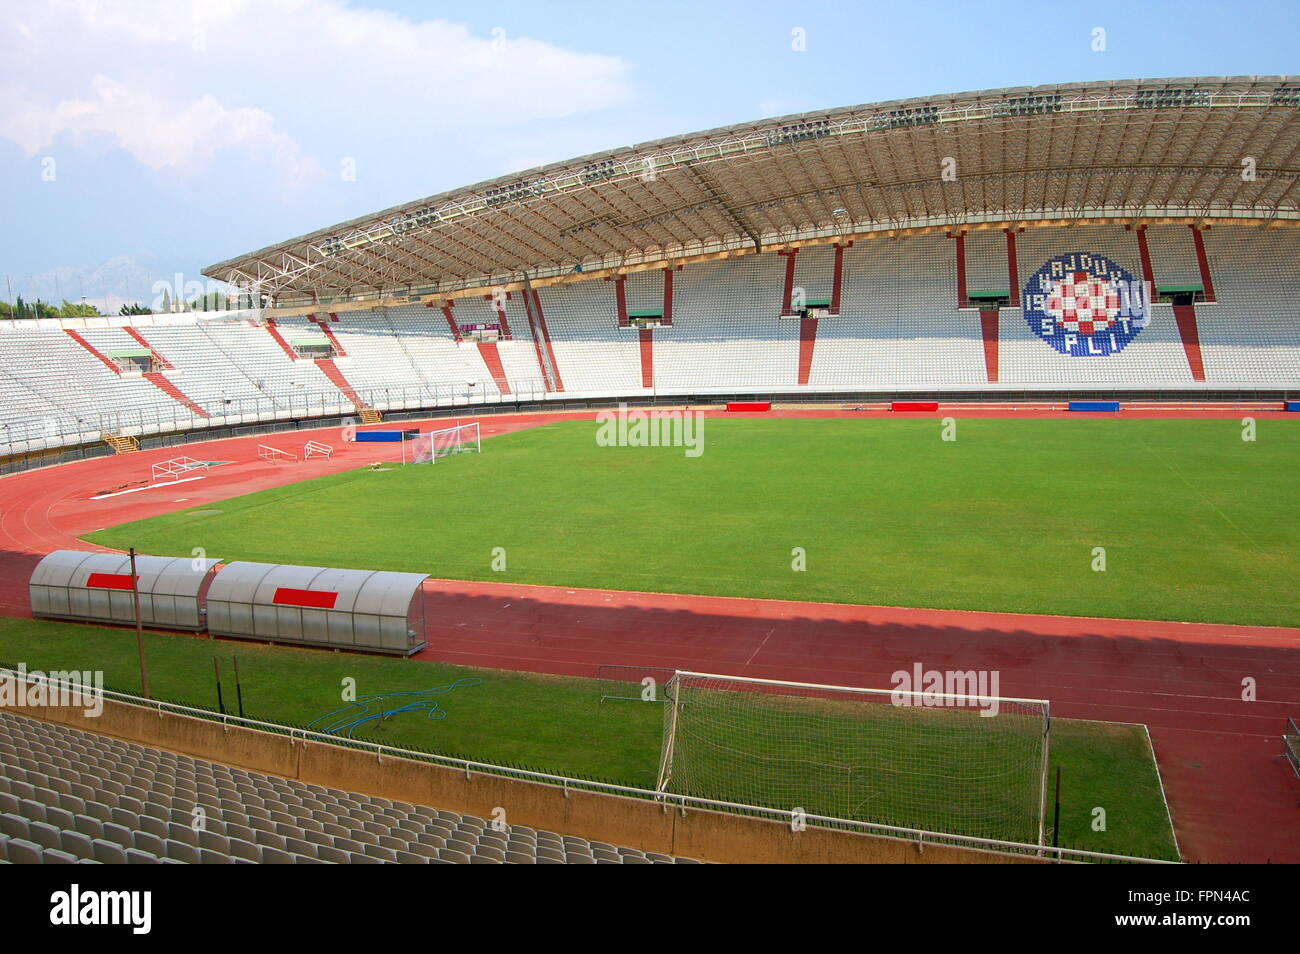 Hajduk Photos and Images